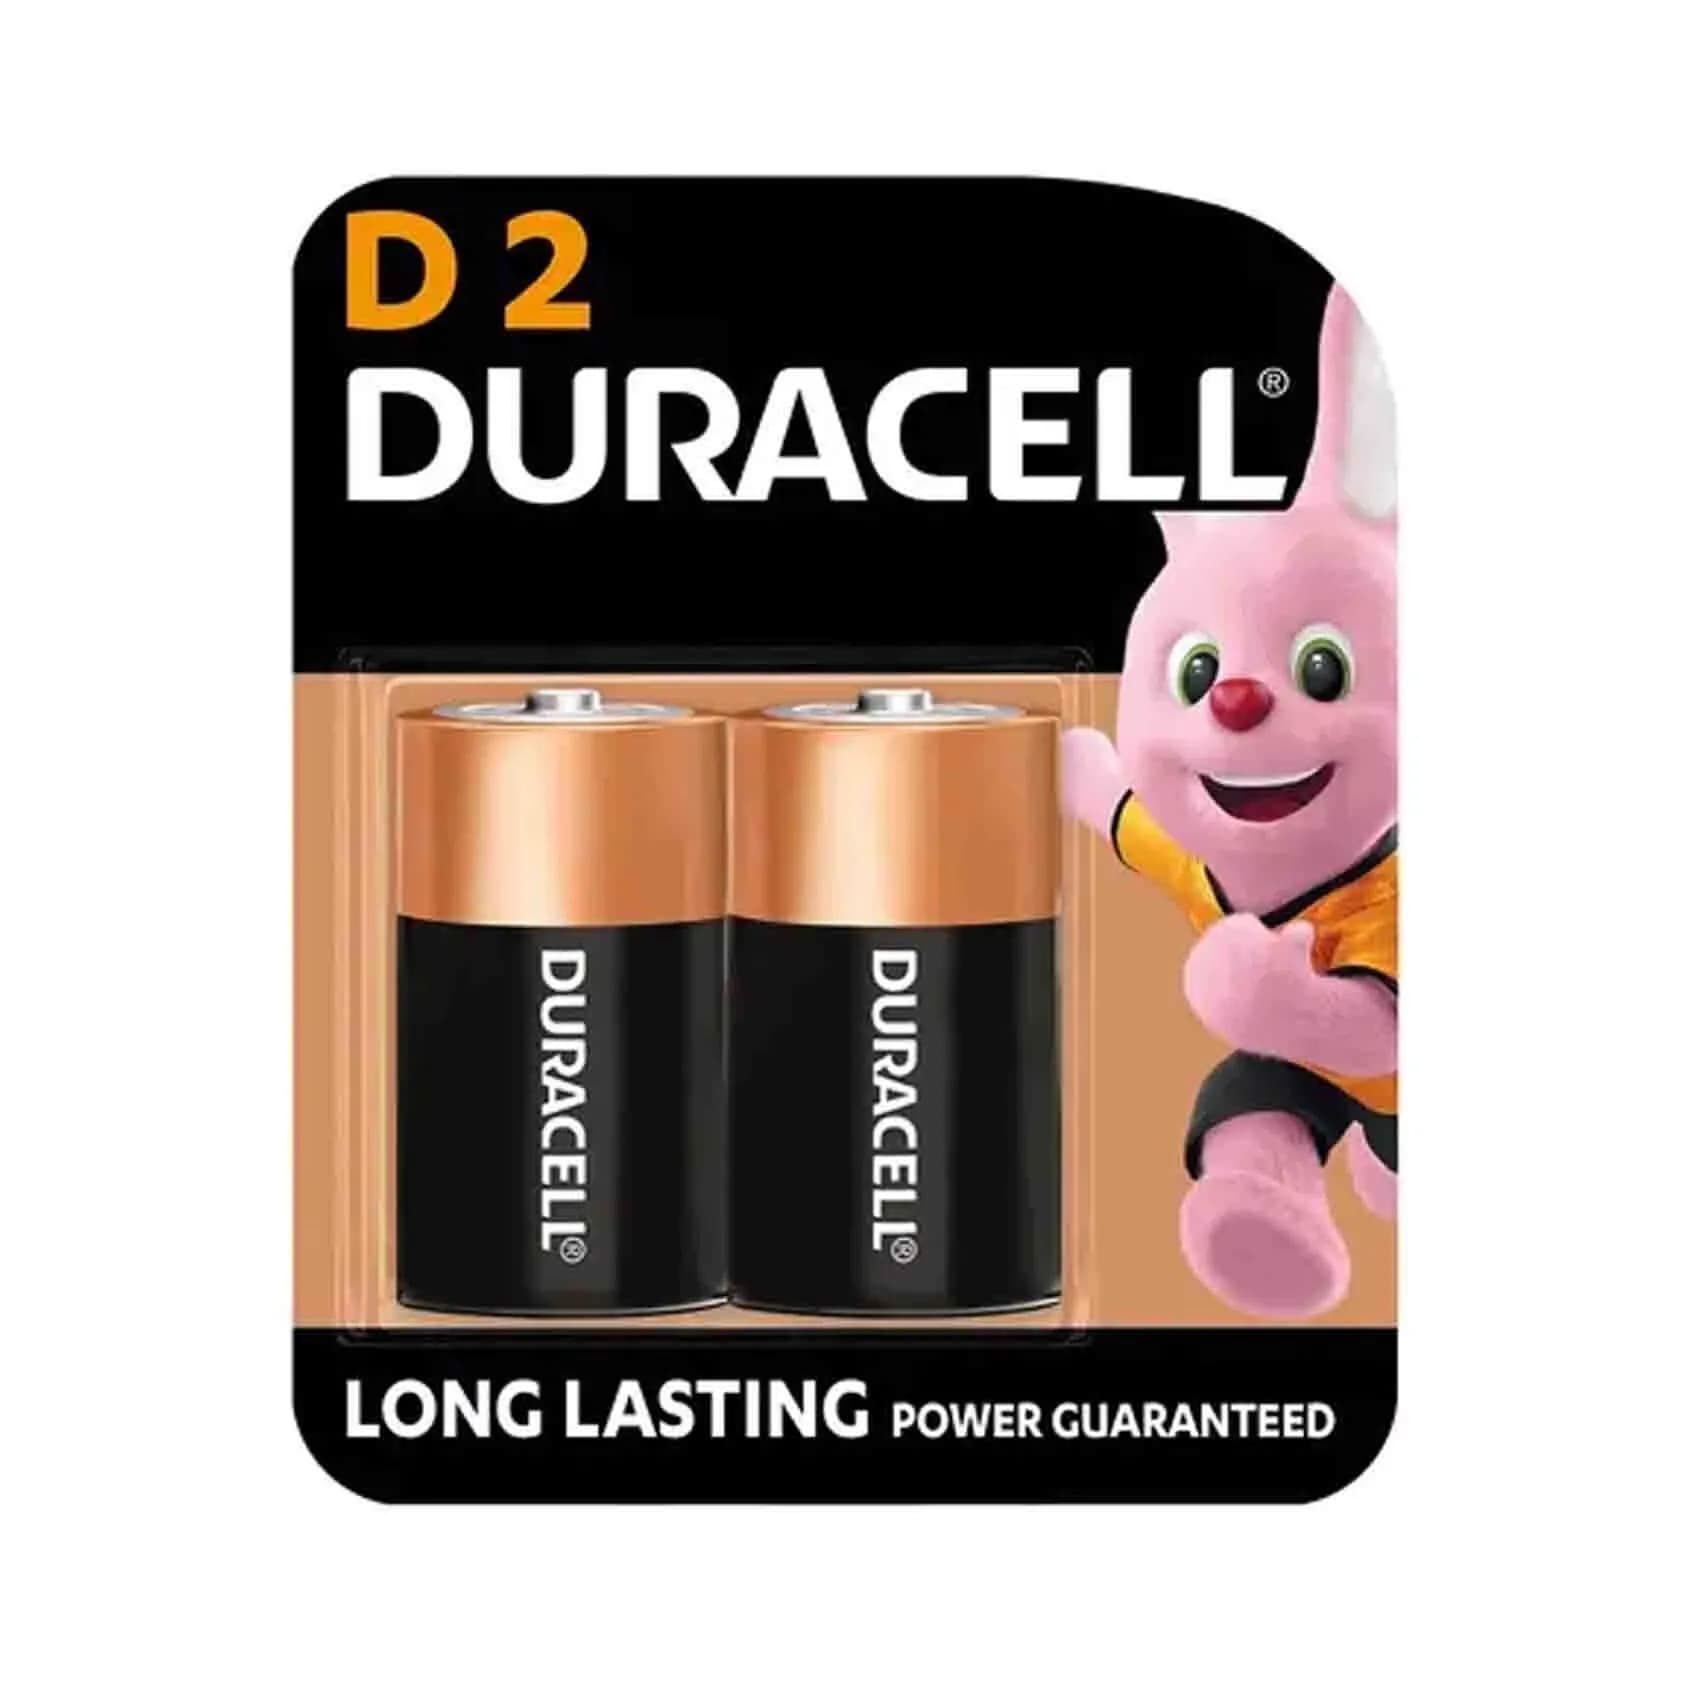 Duracell Battery Monet D2 8